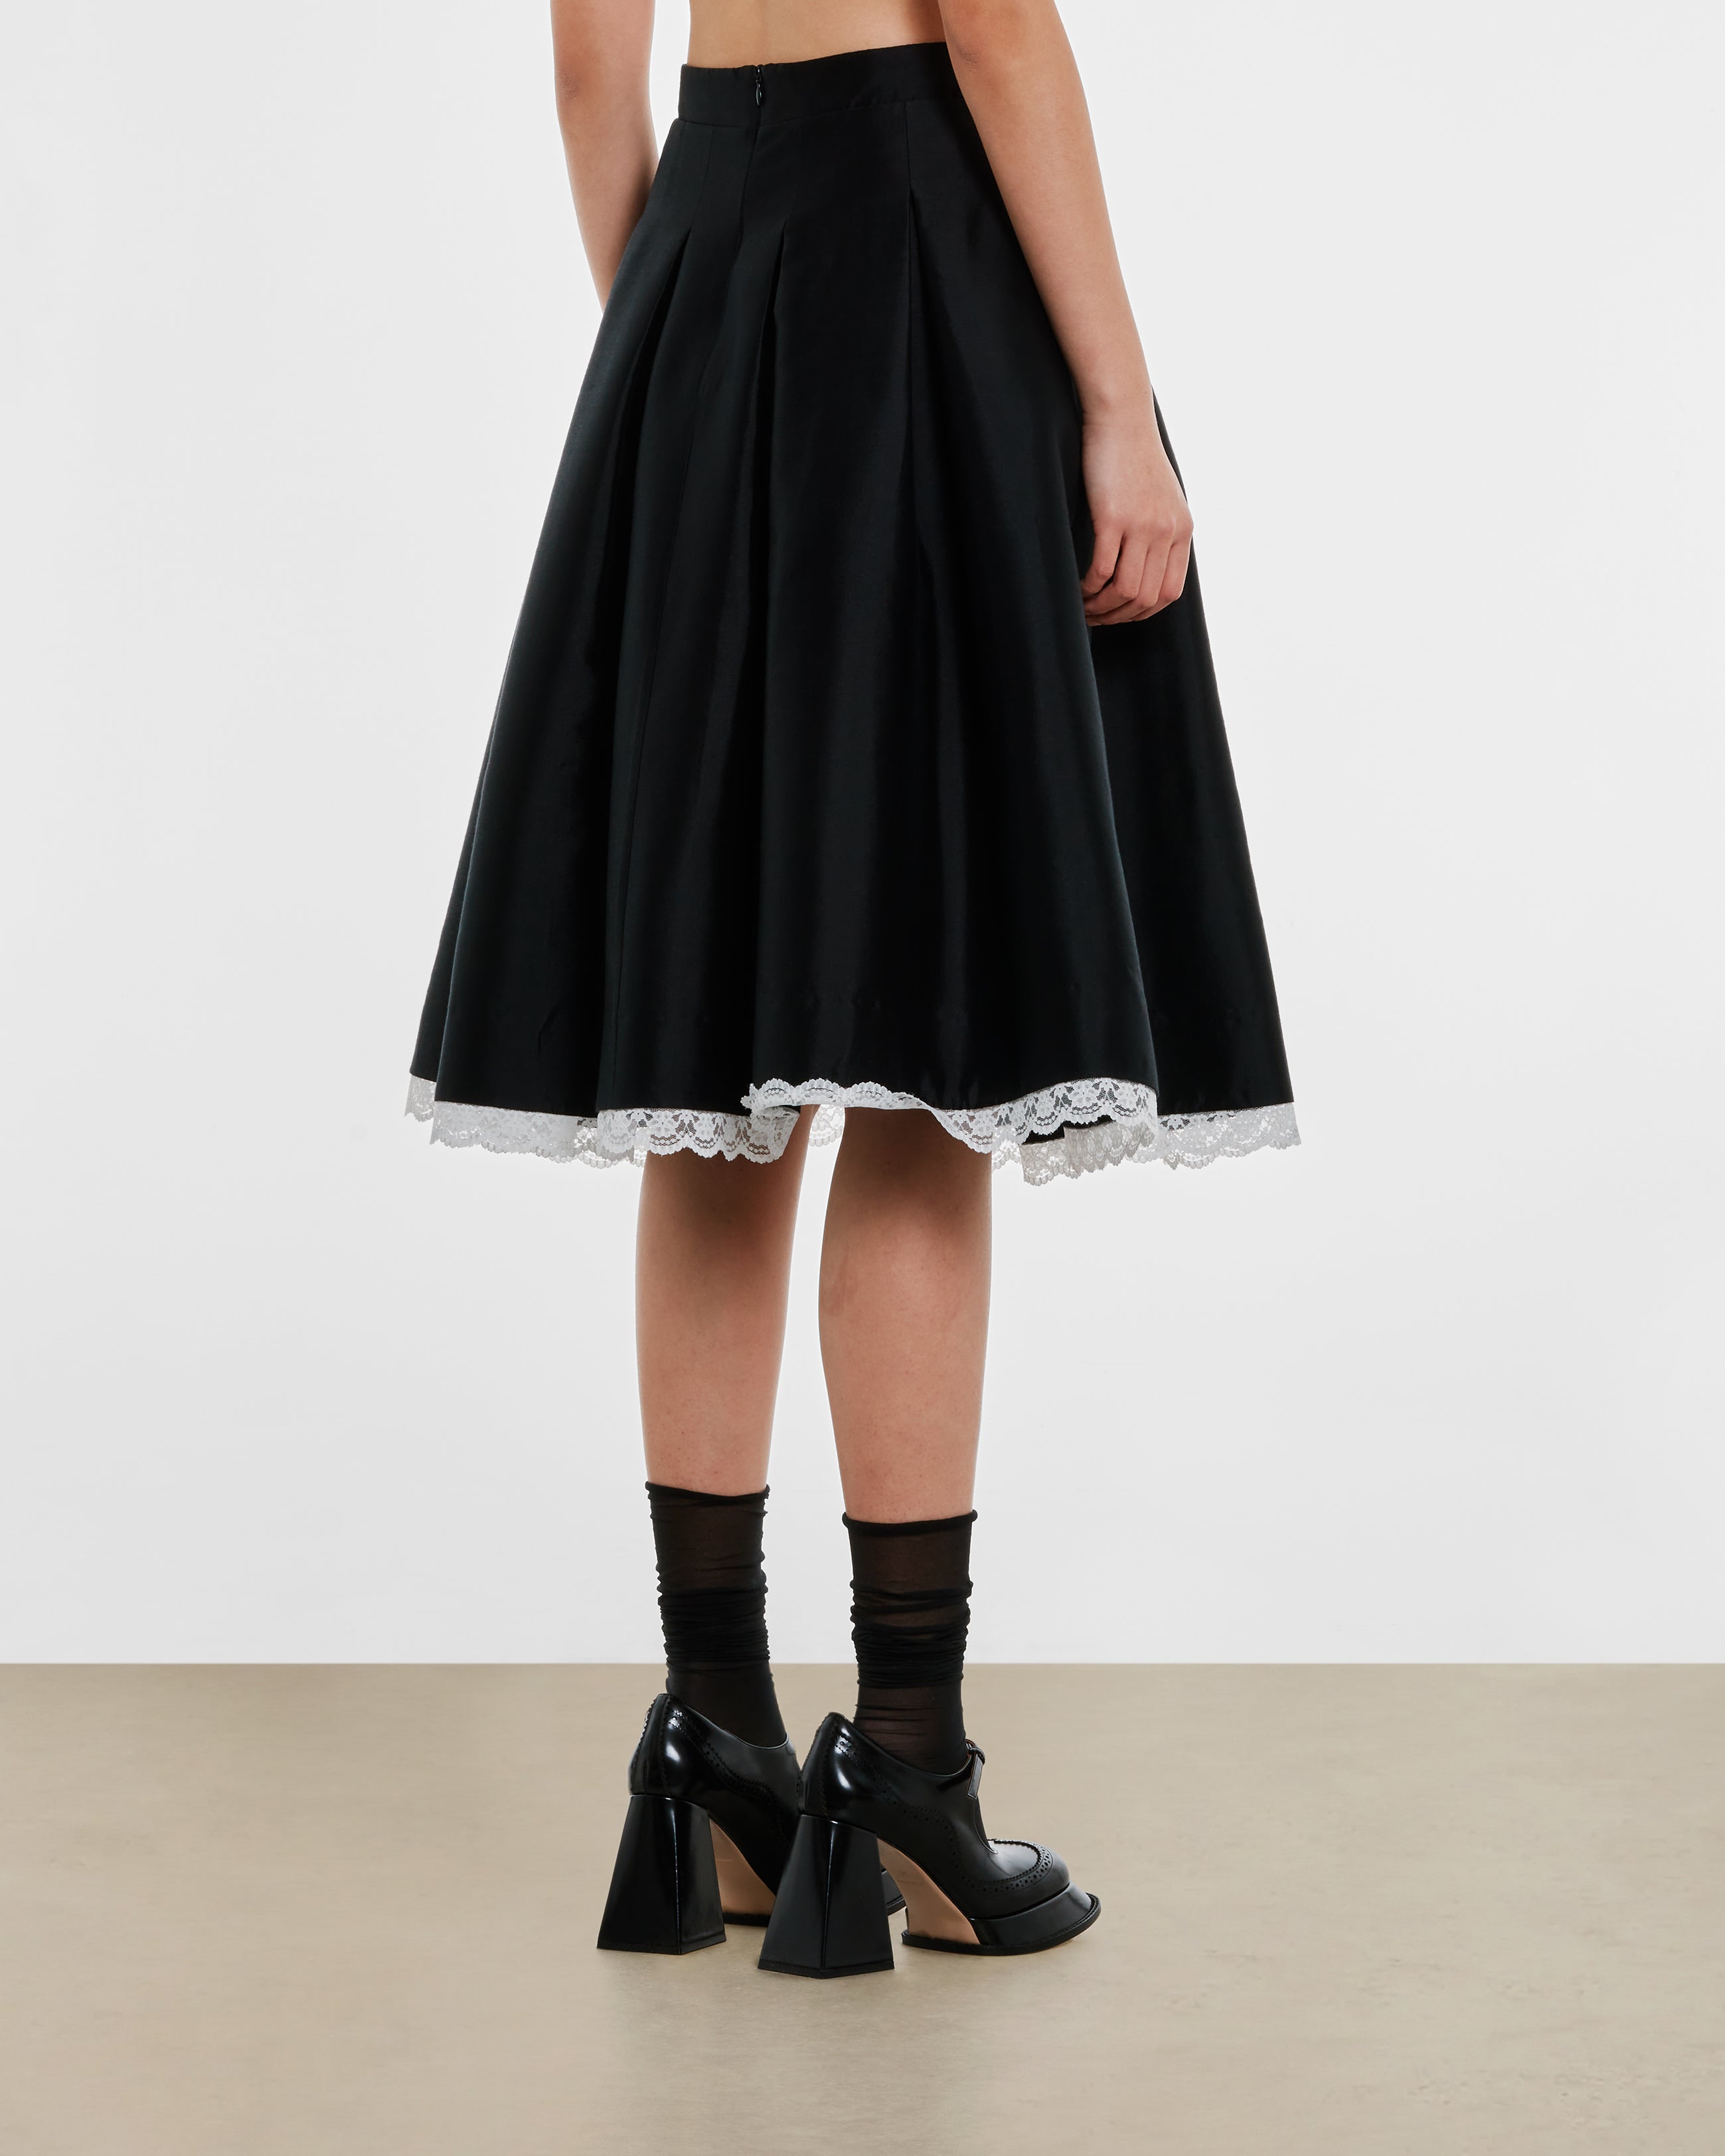 SHUSHU/TONG - Women's Low Waist A-Shape Skirt - (Black)